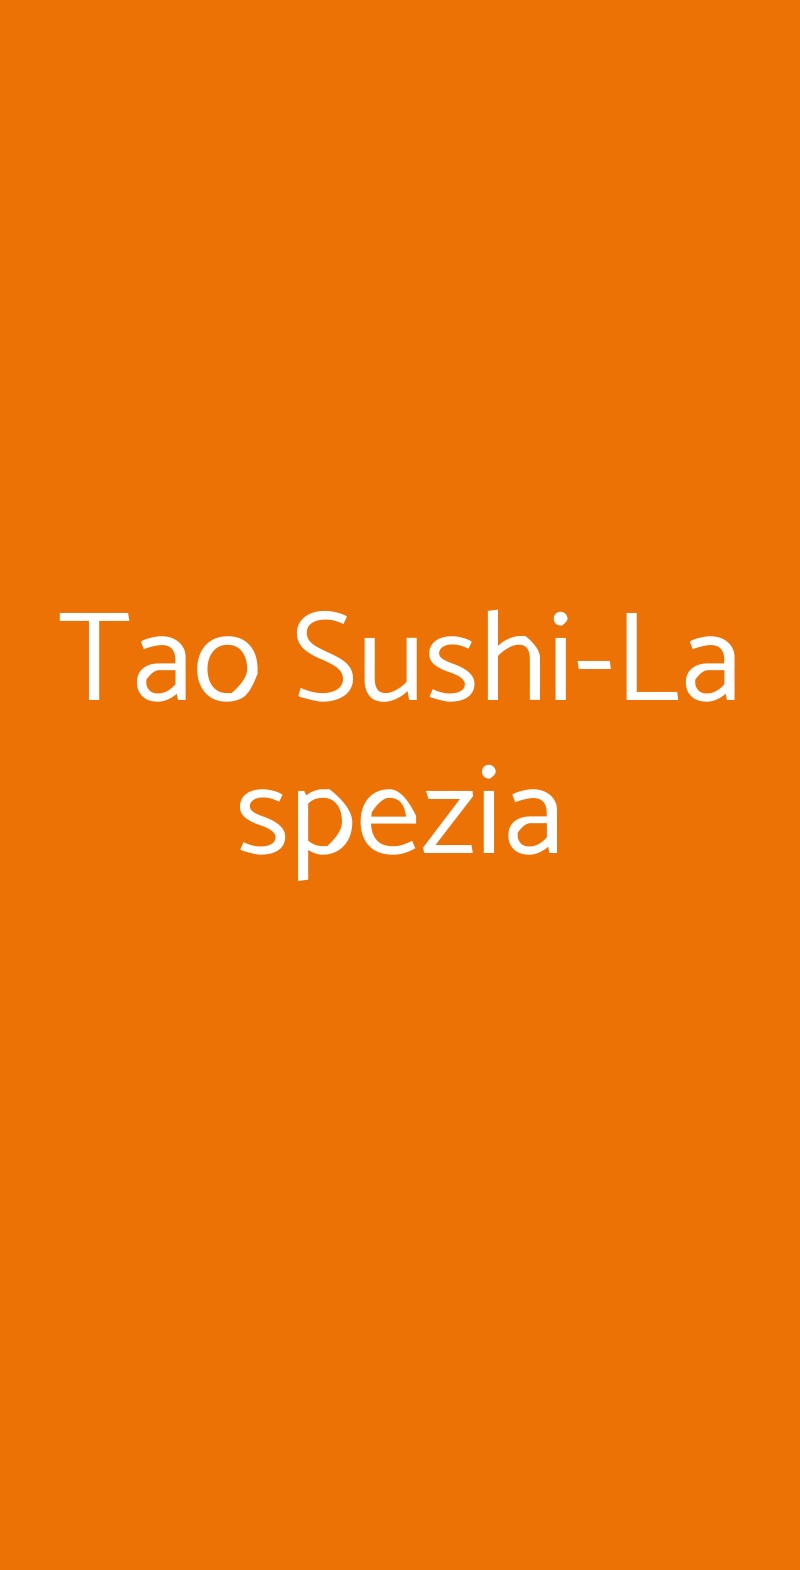 Tao Sushi-La spezia La Spezia menù 1 pagina